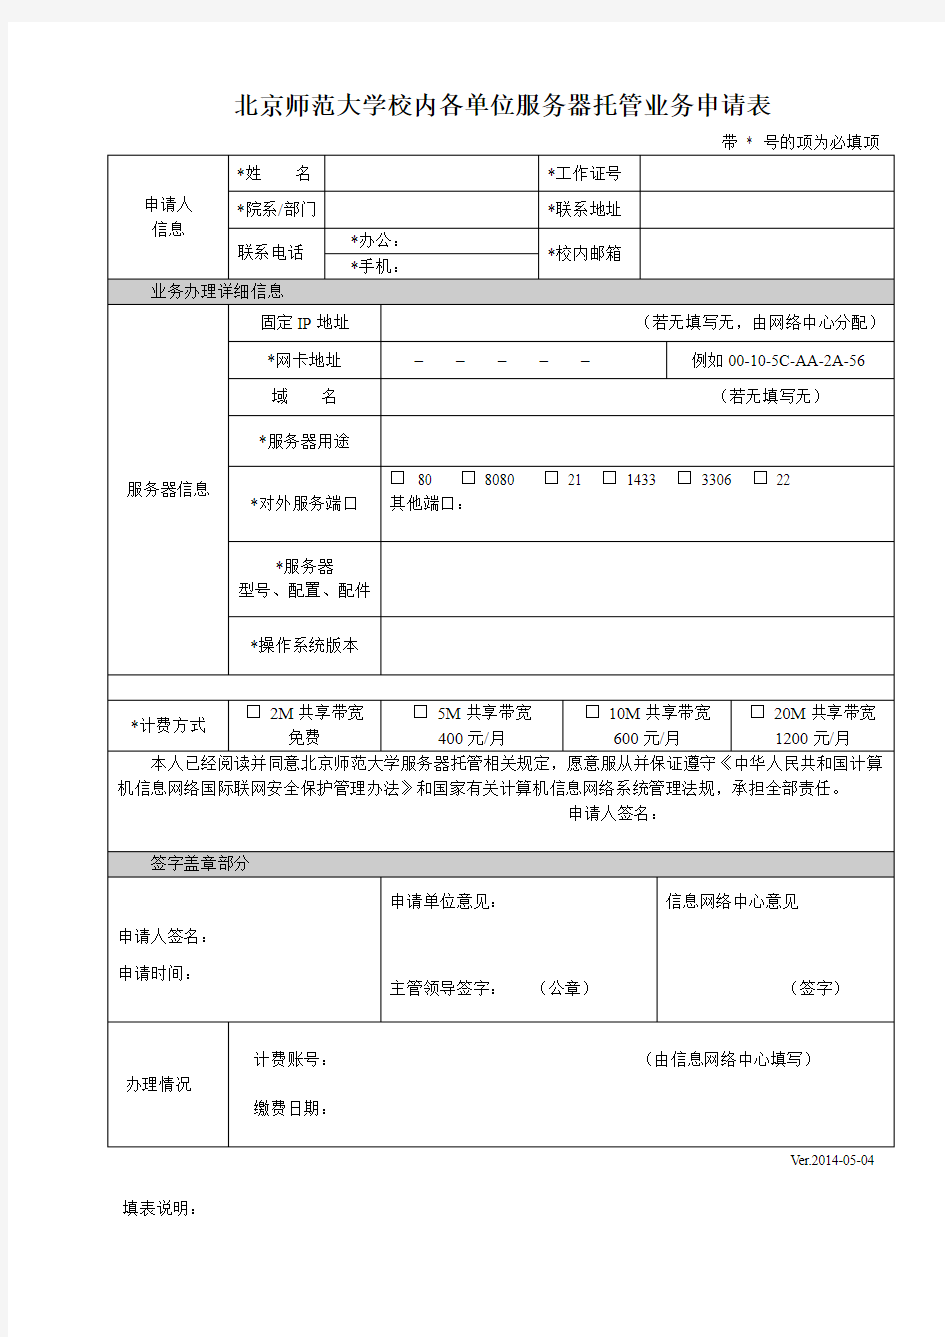 北京师范大学校内各单位服务器托管业务申请表